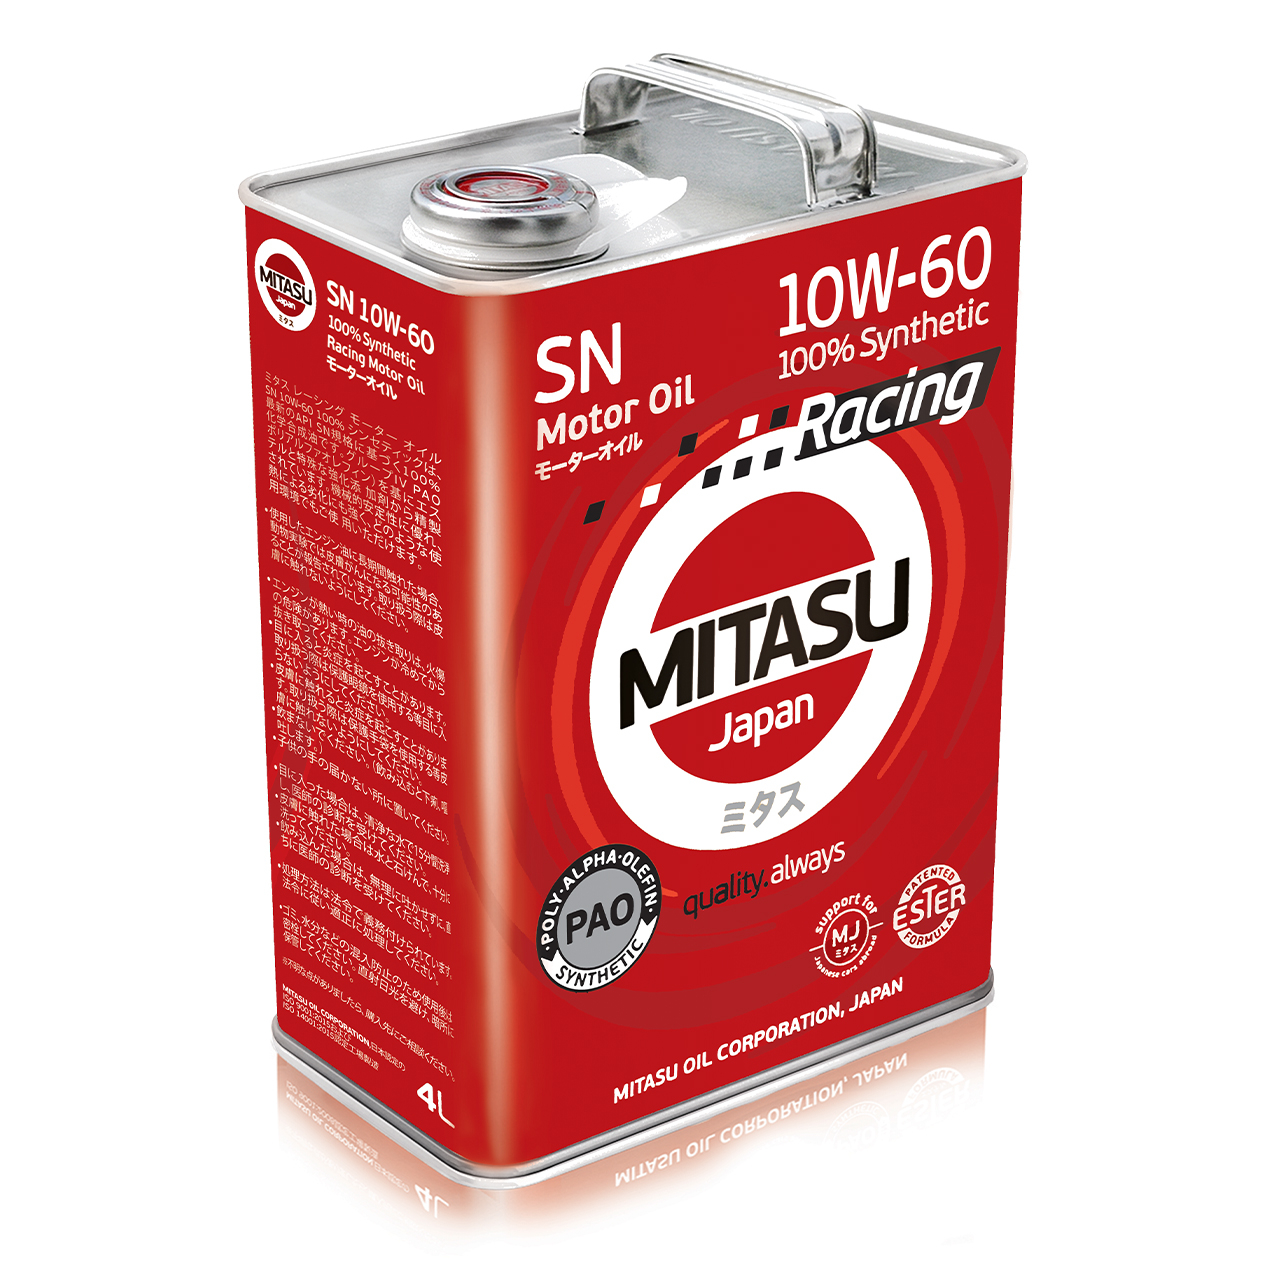 Купить запчасть MITASU - MJ1164 Масло моторное MITASU RACING SN 10w60 4л синтетическое для бензиновых двигателей MJ116 (1/6) Япония